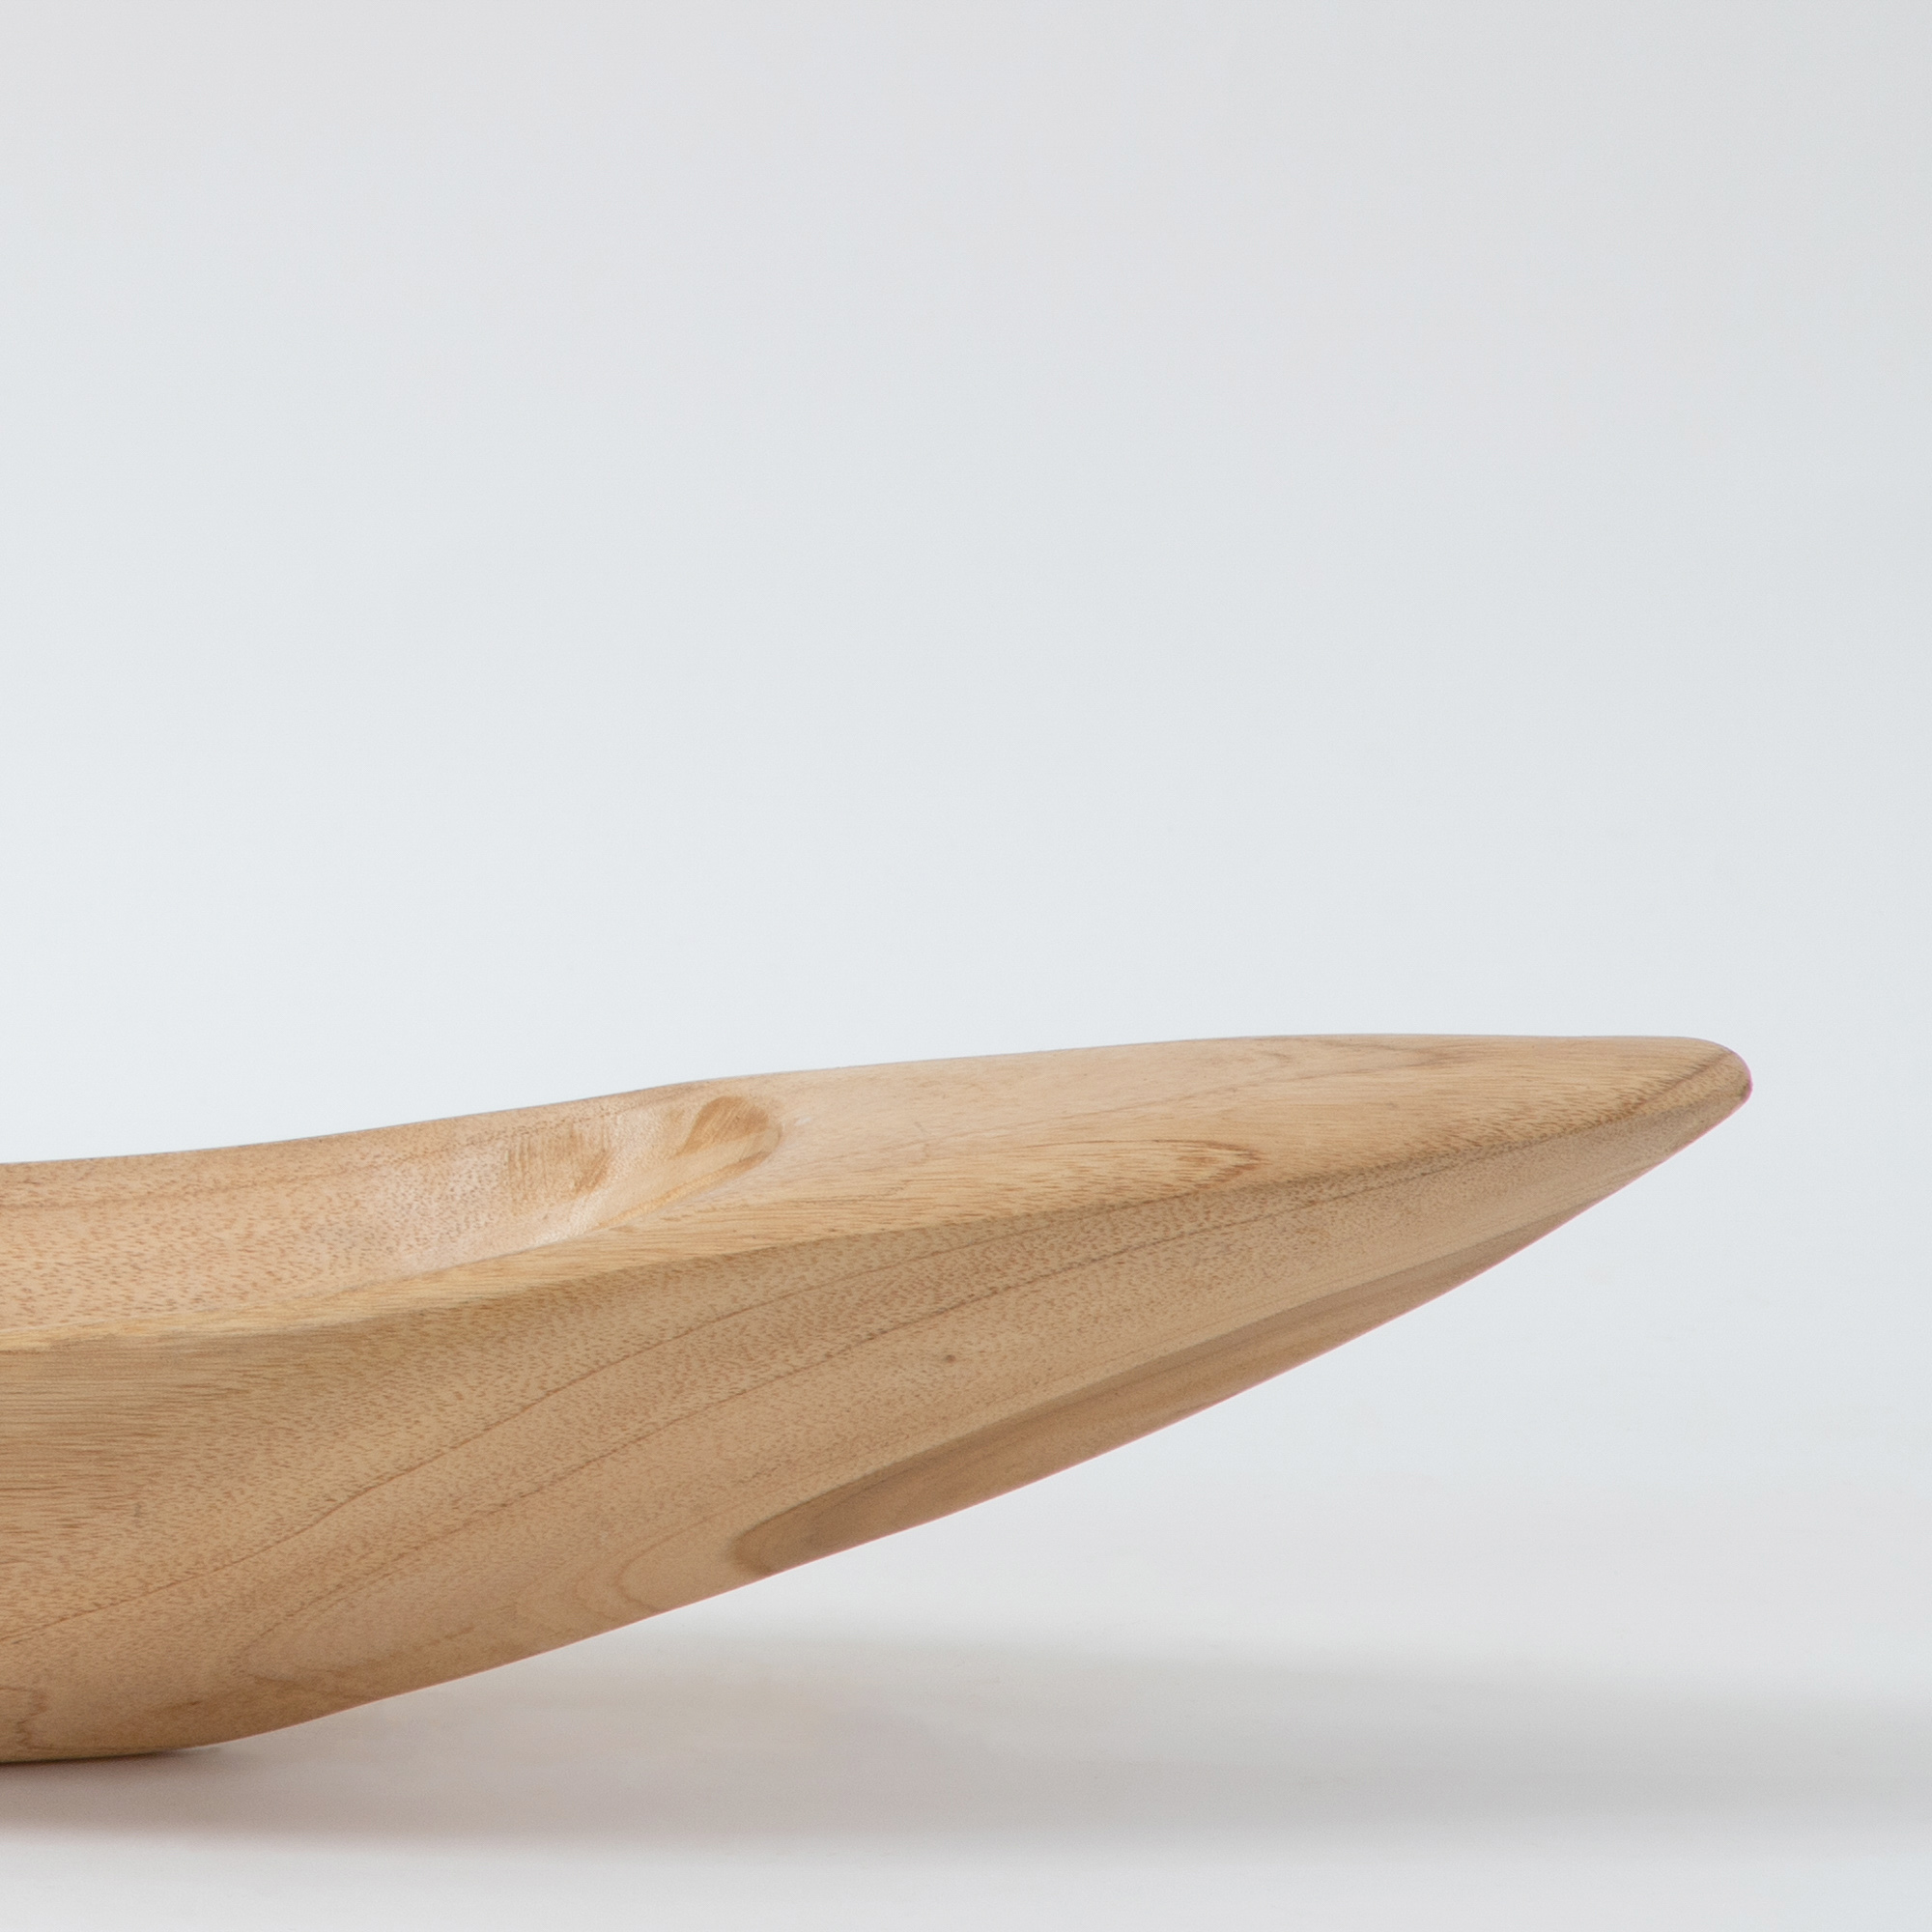 Wooden Kayak Bowl